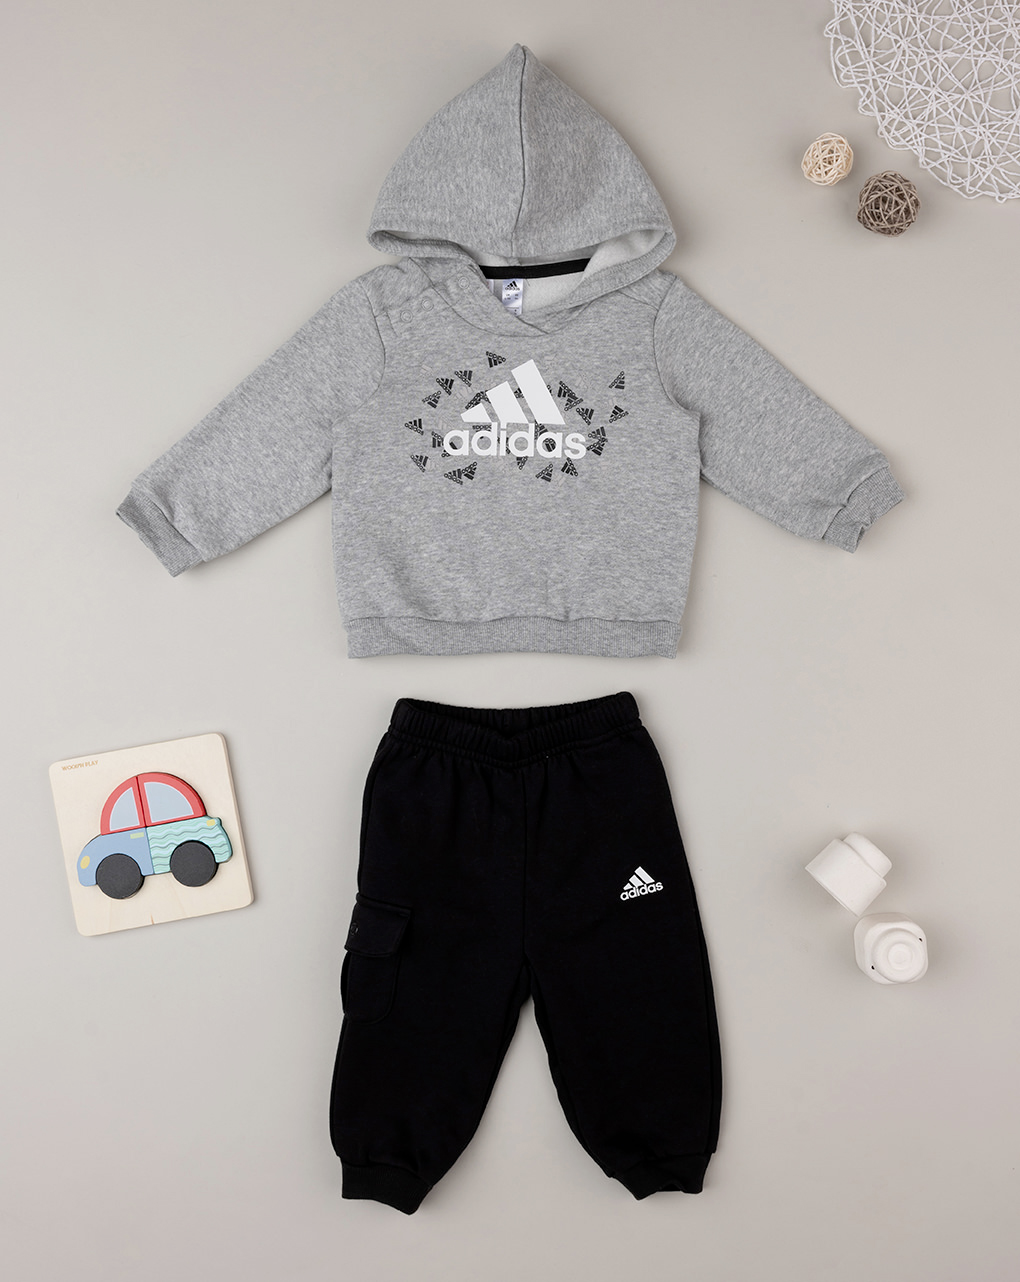 Adidas αθλητικό σετ φούτερ και φόρμα hu1555 για αγόρι